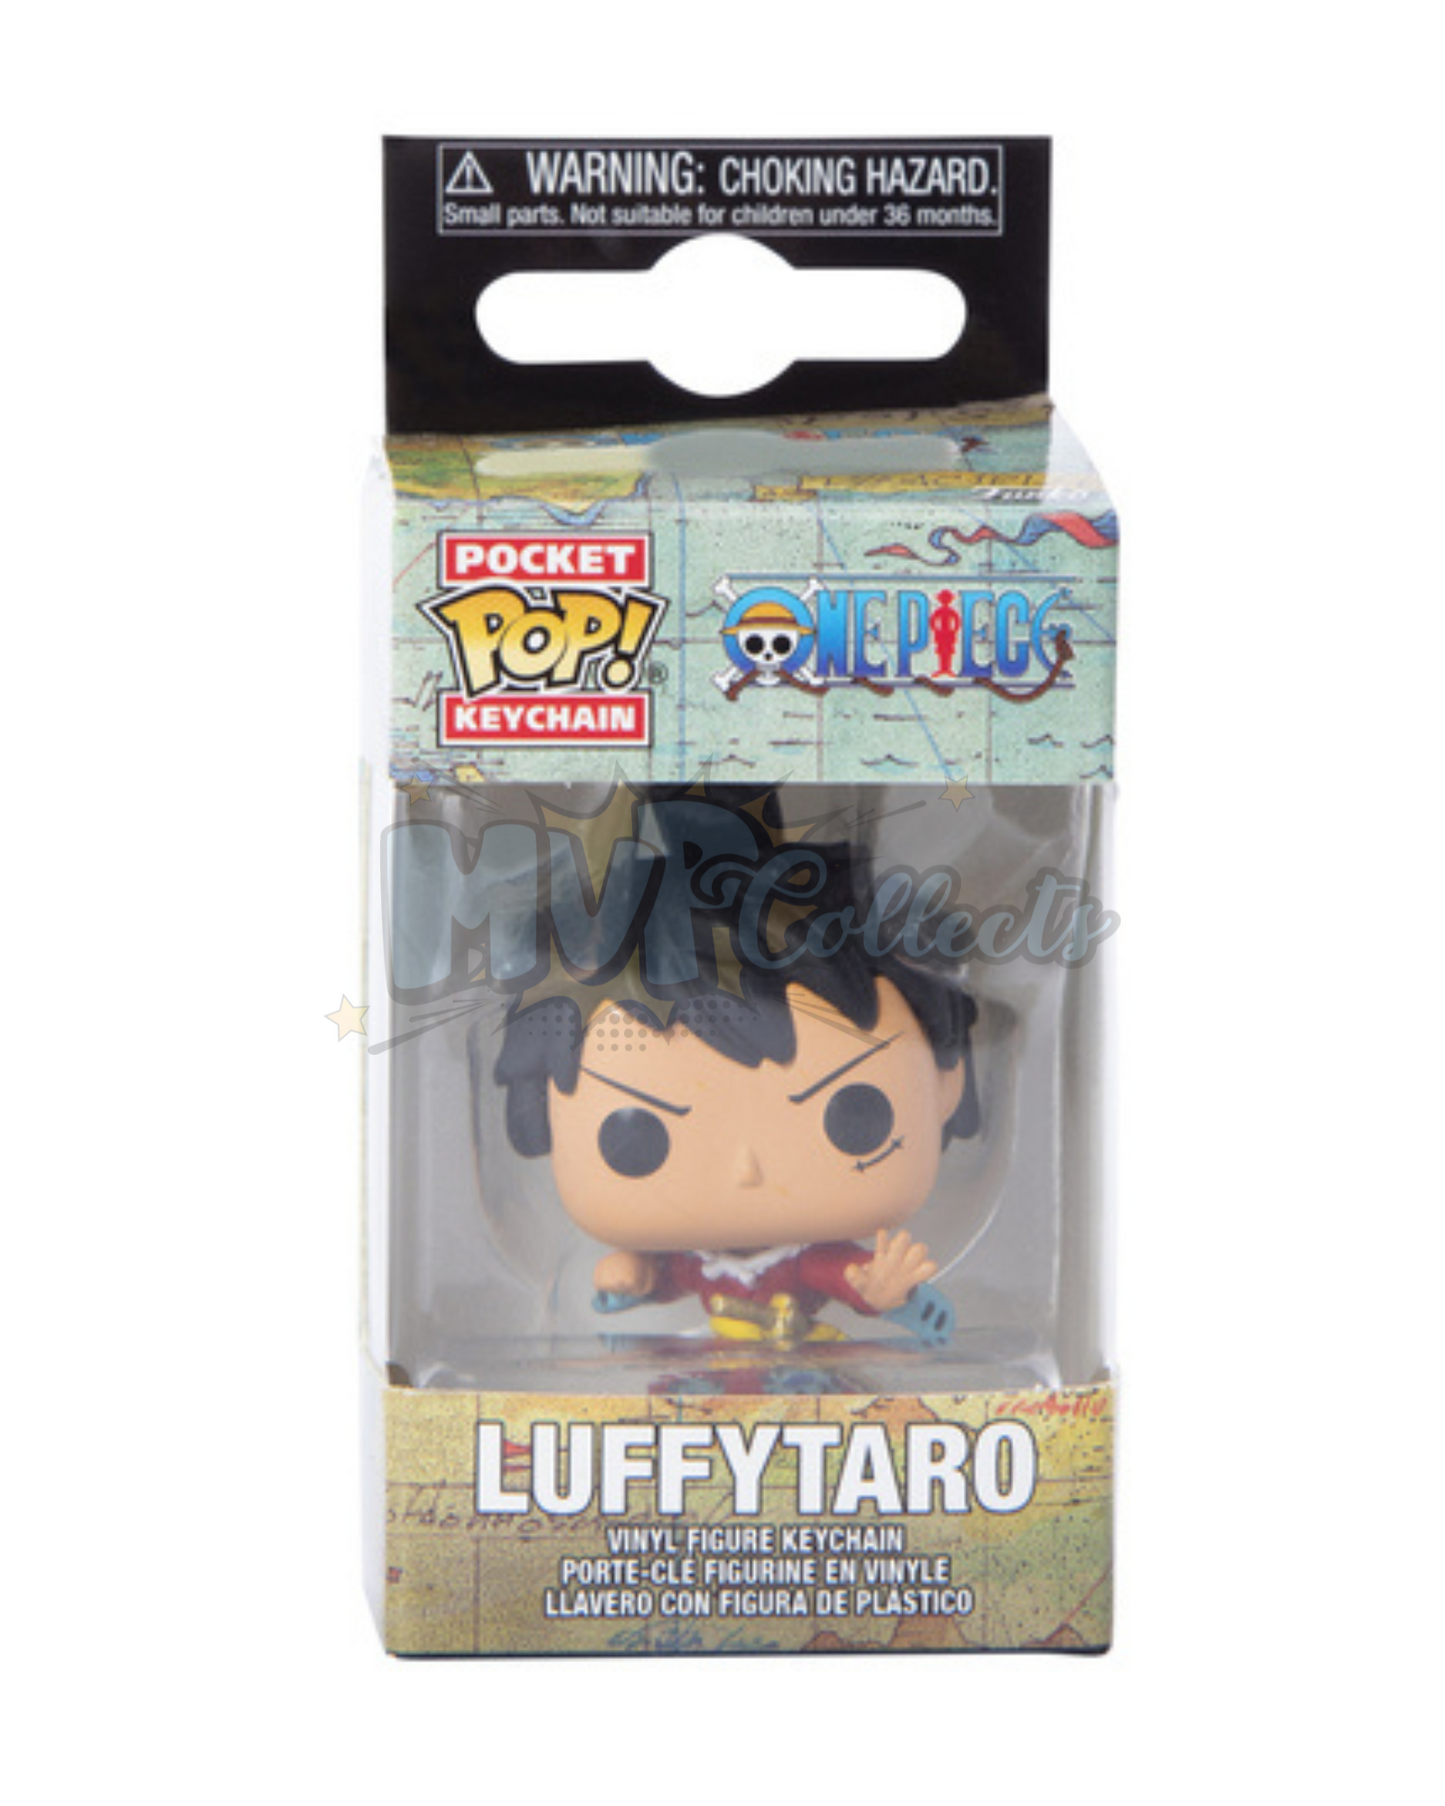 Pocket Pop! Keychain: One Piece "Luffytaro"